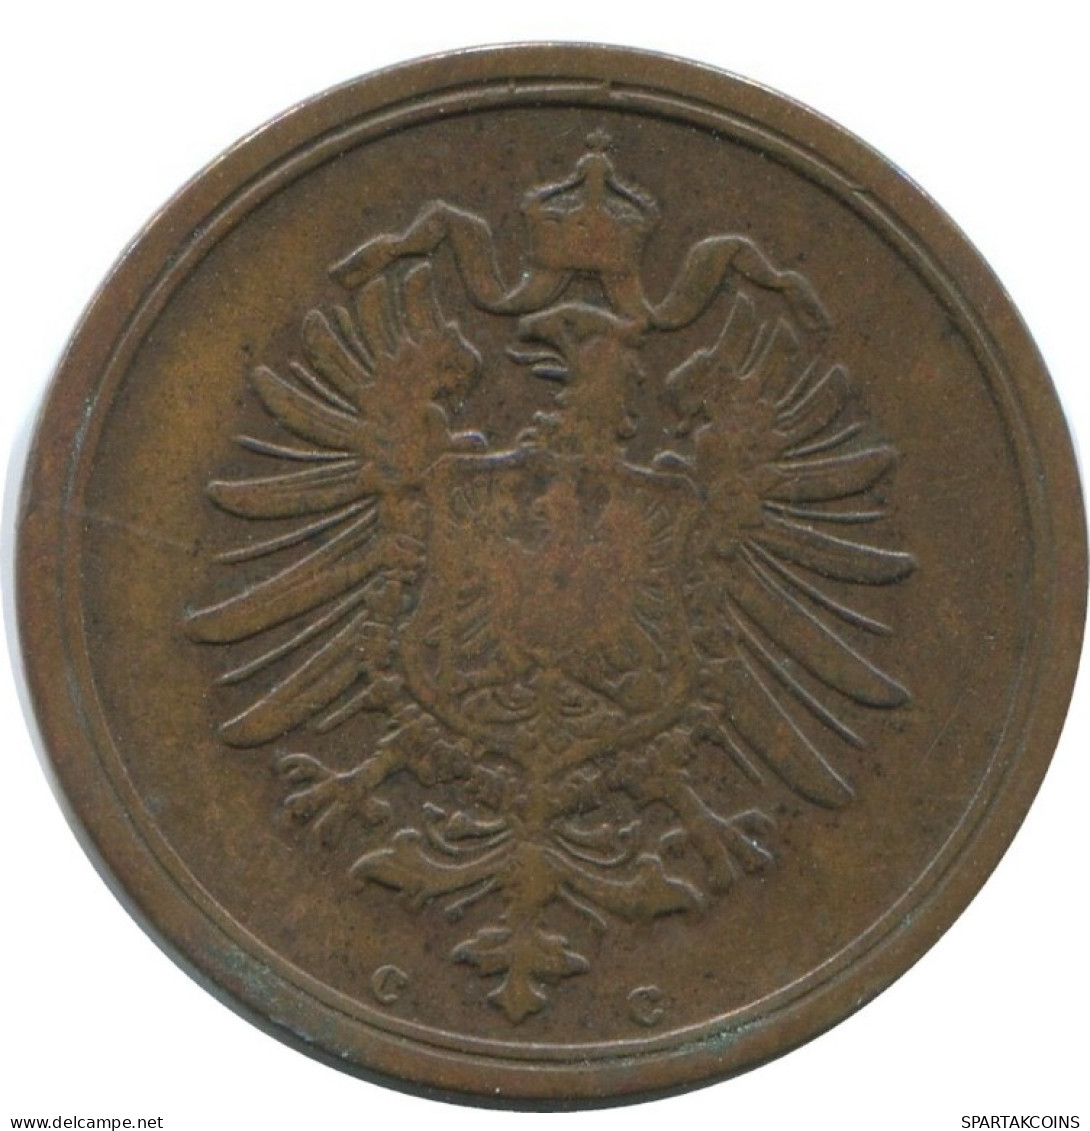 1 PFENNIG 1874 C ALEMANIA Moneda GERMANY #AE607.E.A - 1 Pfennig